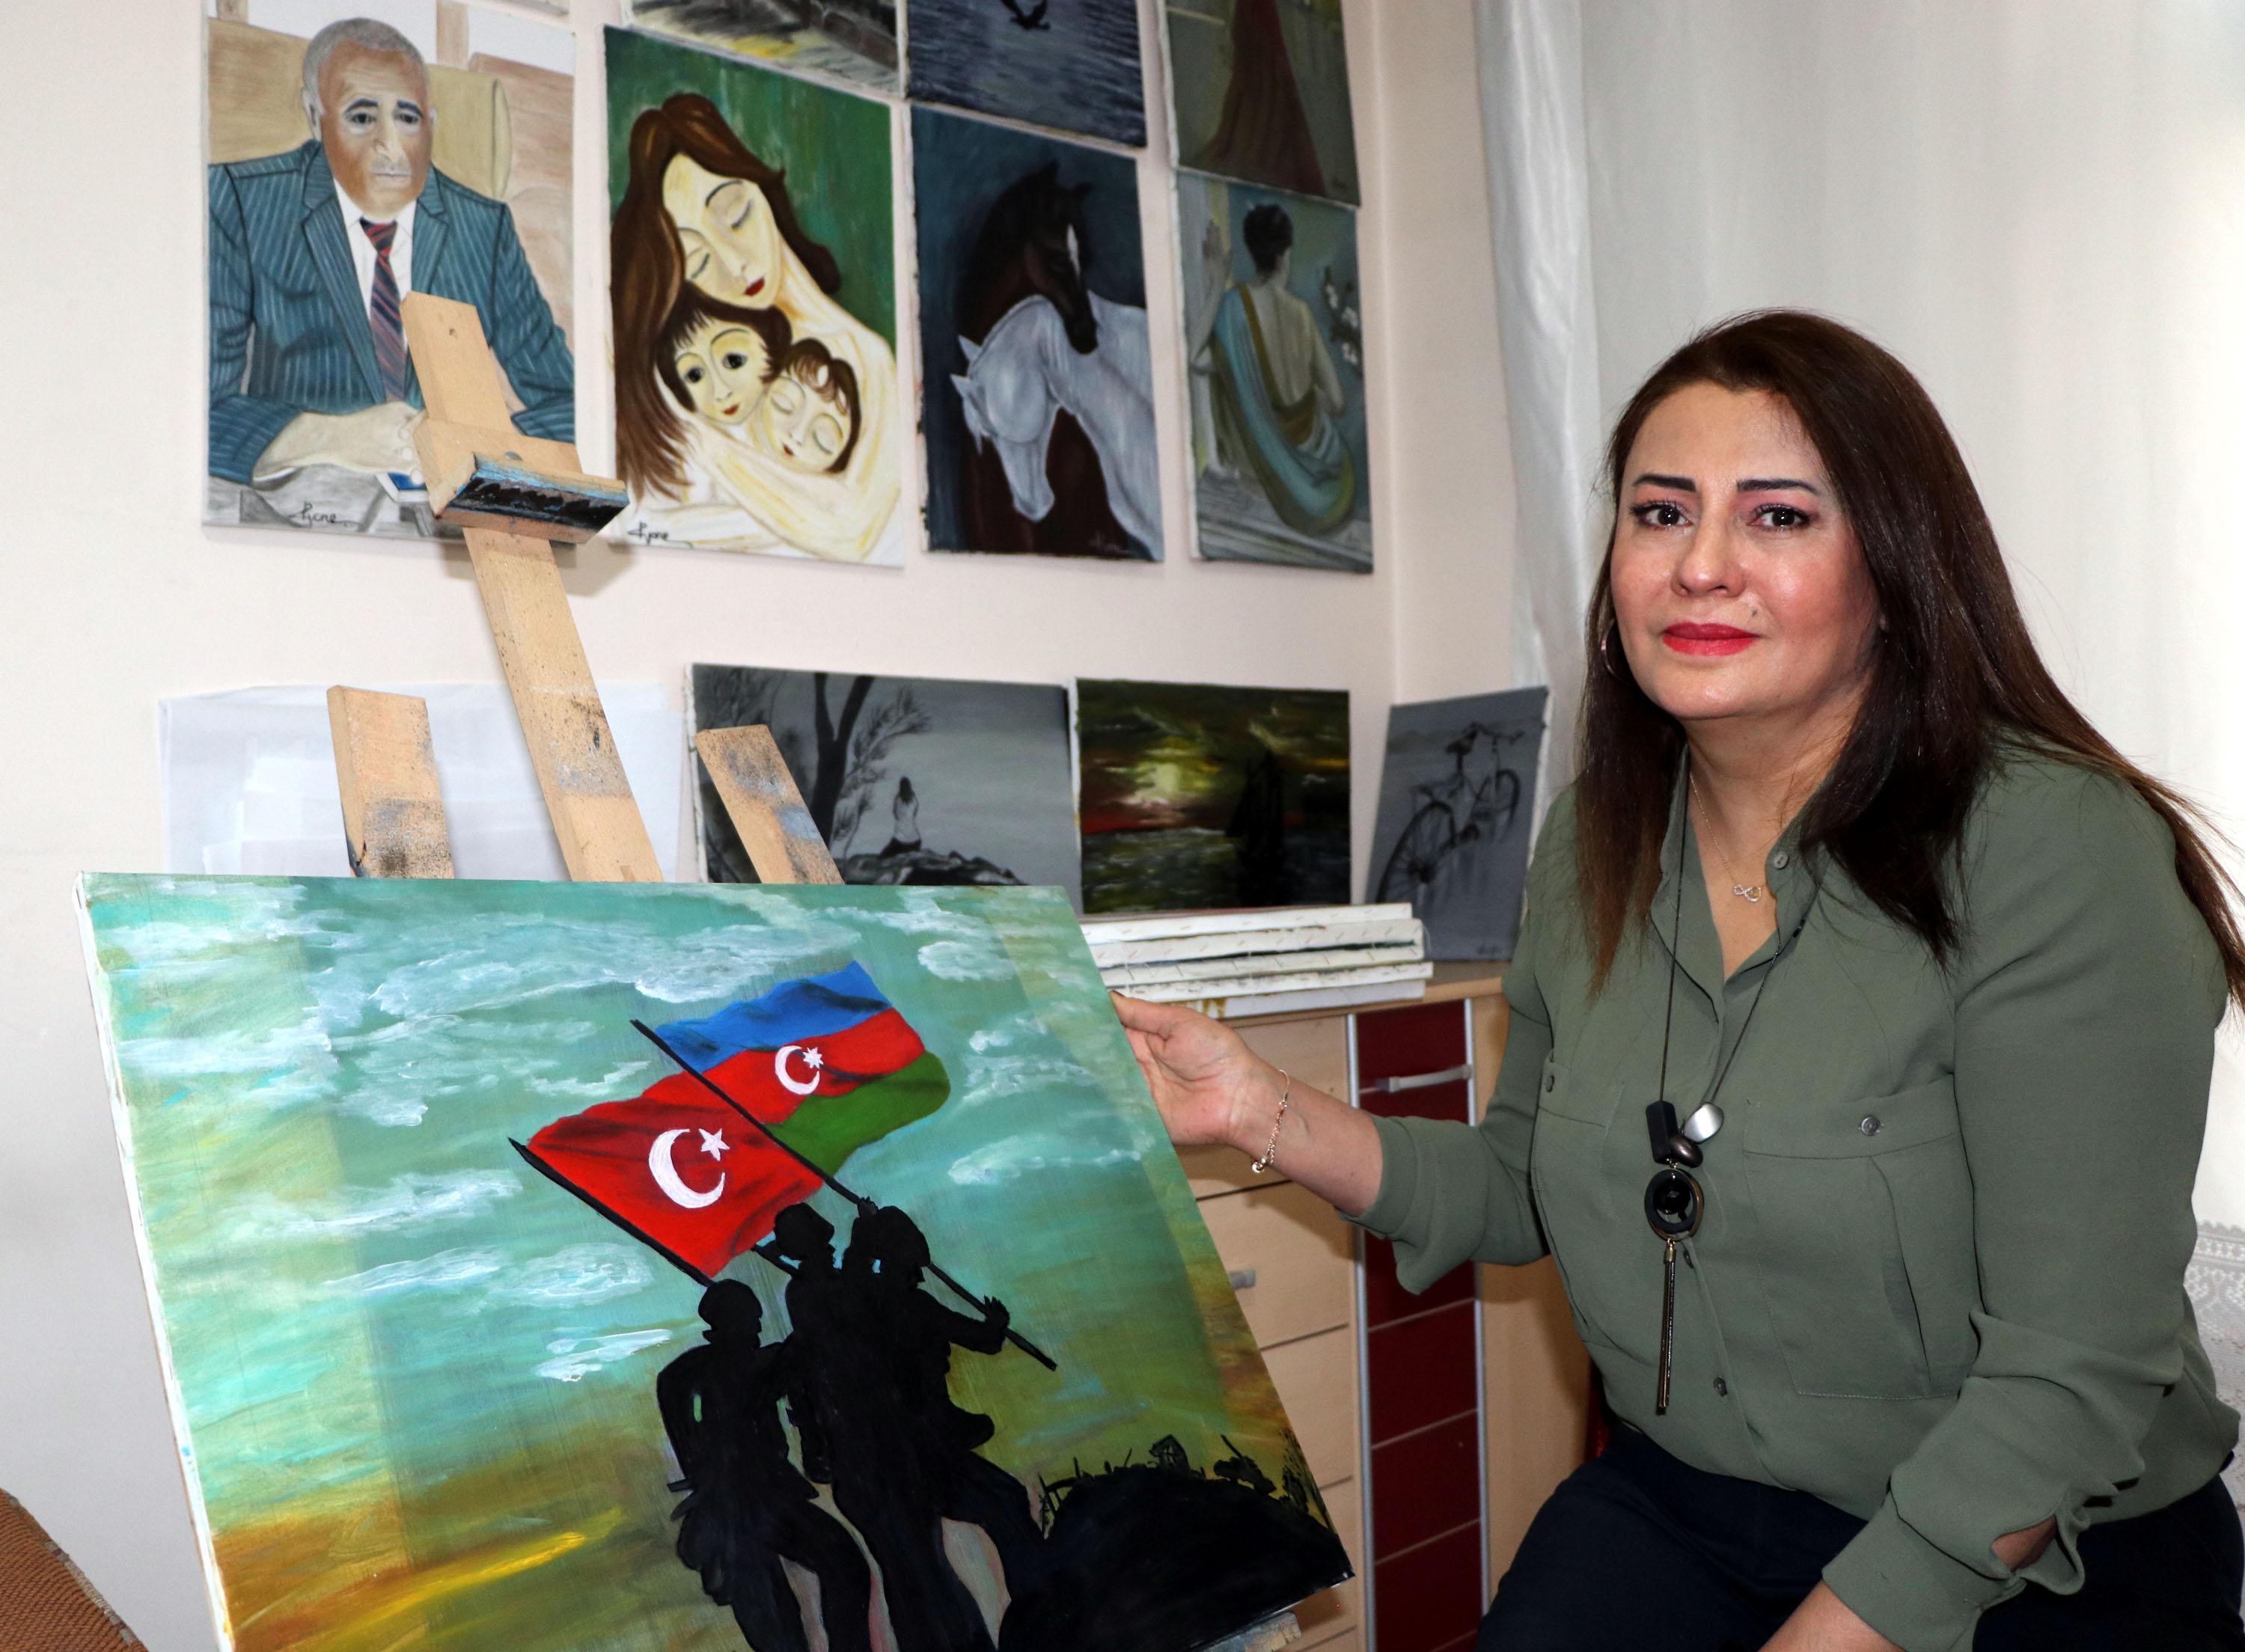 Azerbaycanın, Ermenistana karşı cephe zaferini sanata dönüştürdü